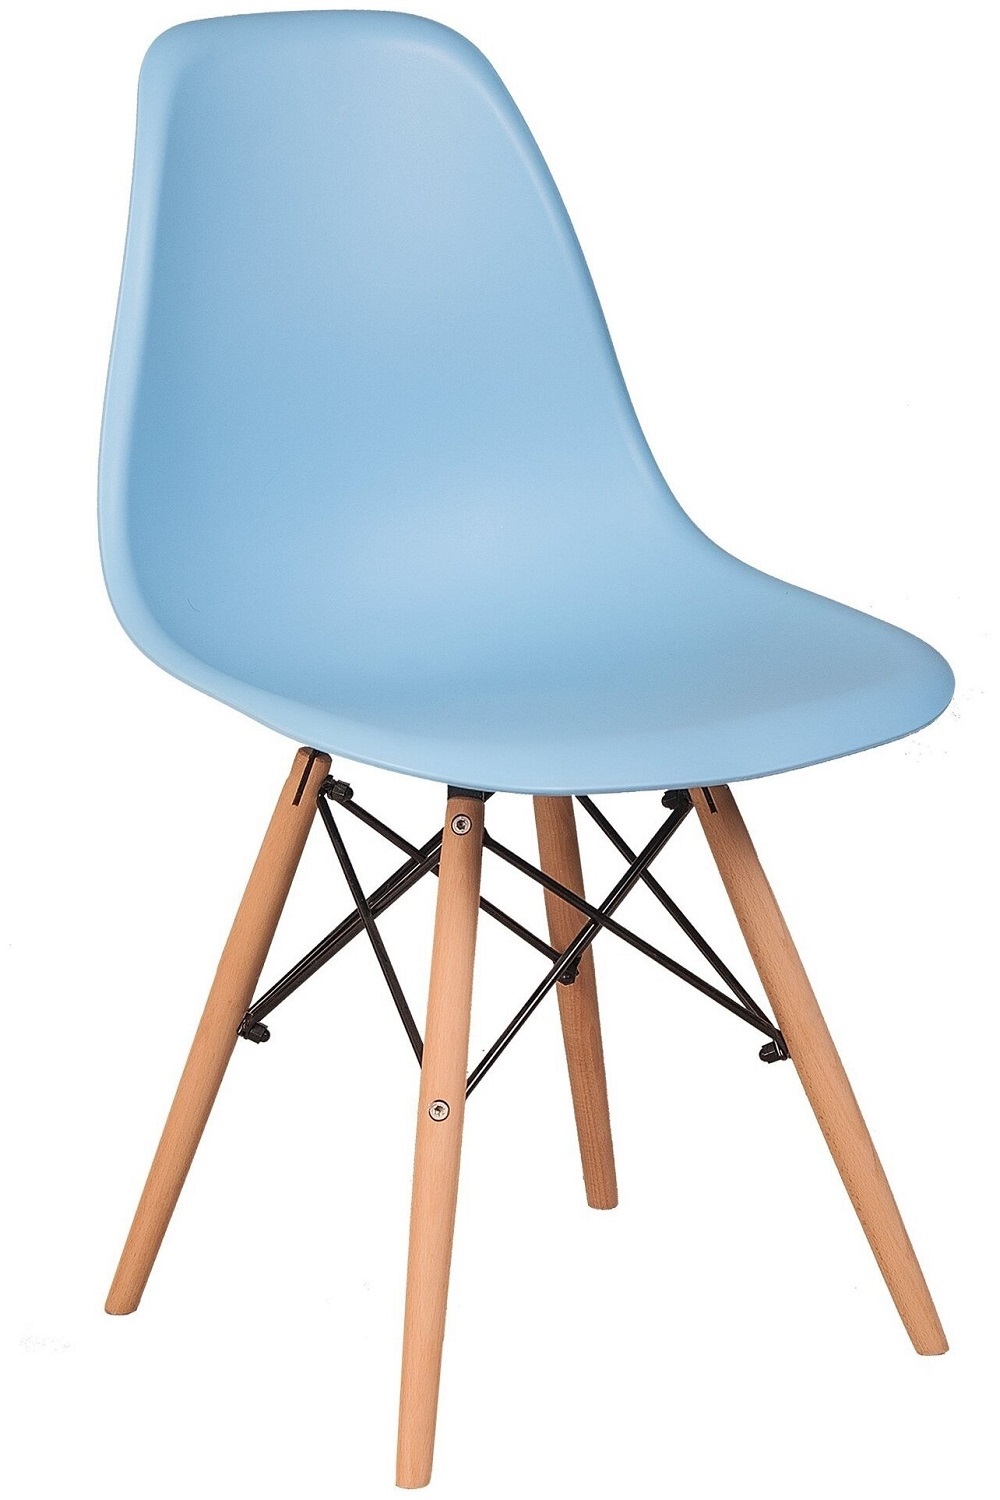 Пластиковый стул на деревянном каркасе, цвет голубой.